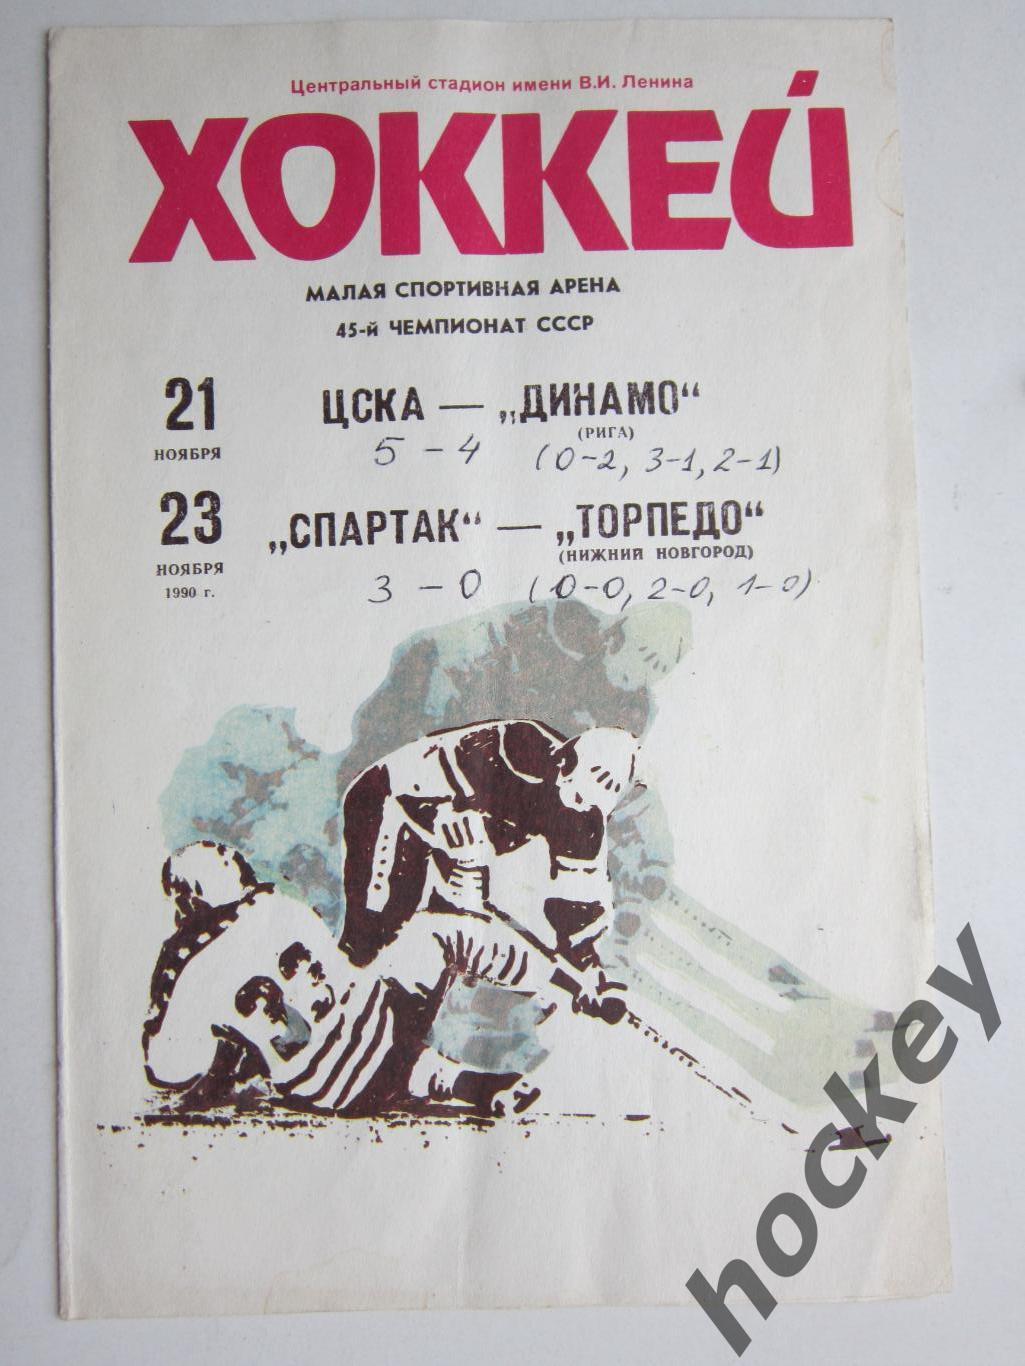 ЦСКА - Динамо Рига 21.11.1990, Спартак - Торпедо НН 23.11.1990